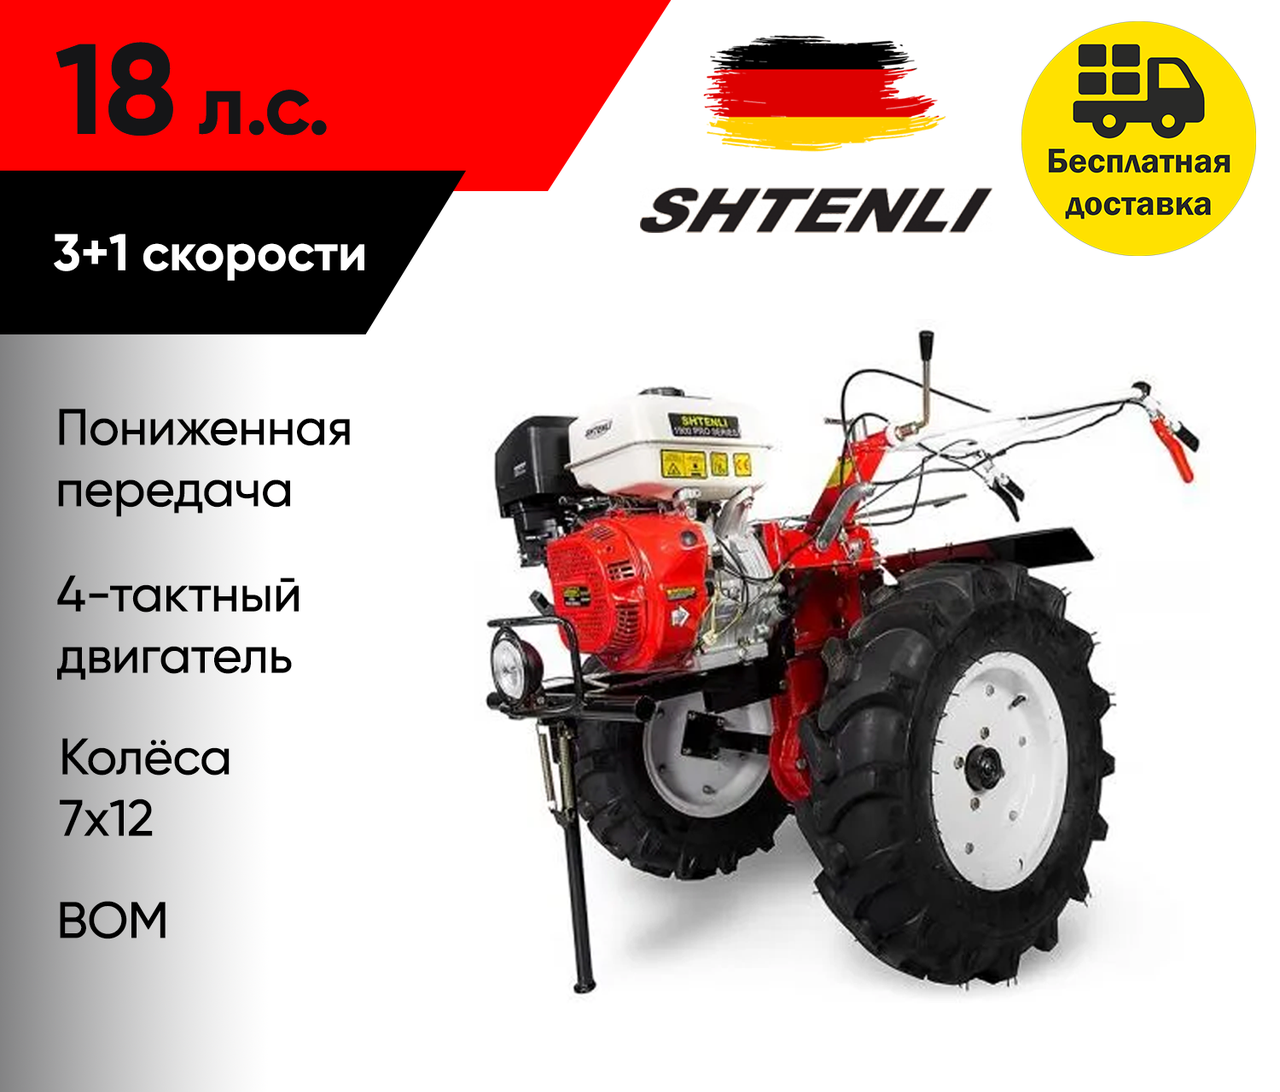 Мотоблок Shtenli 1900 PRO (18 л.с.) (ВОМ, пониженная передача, колеса 7x12)